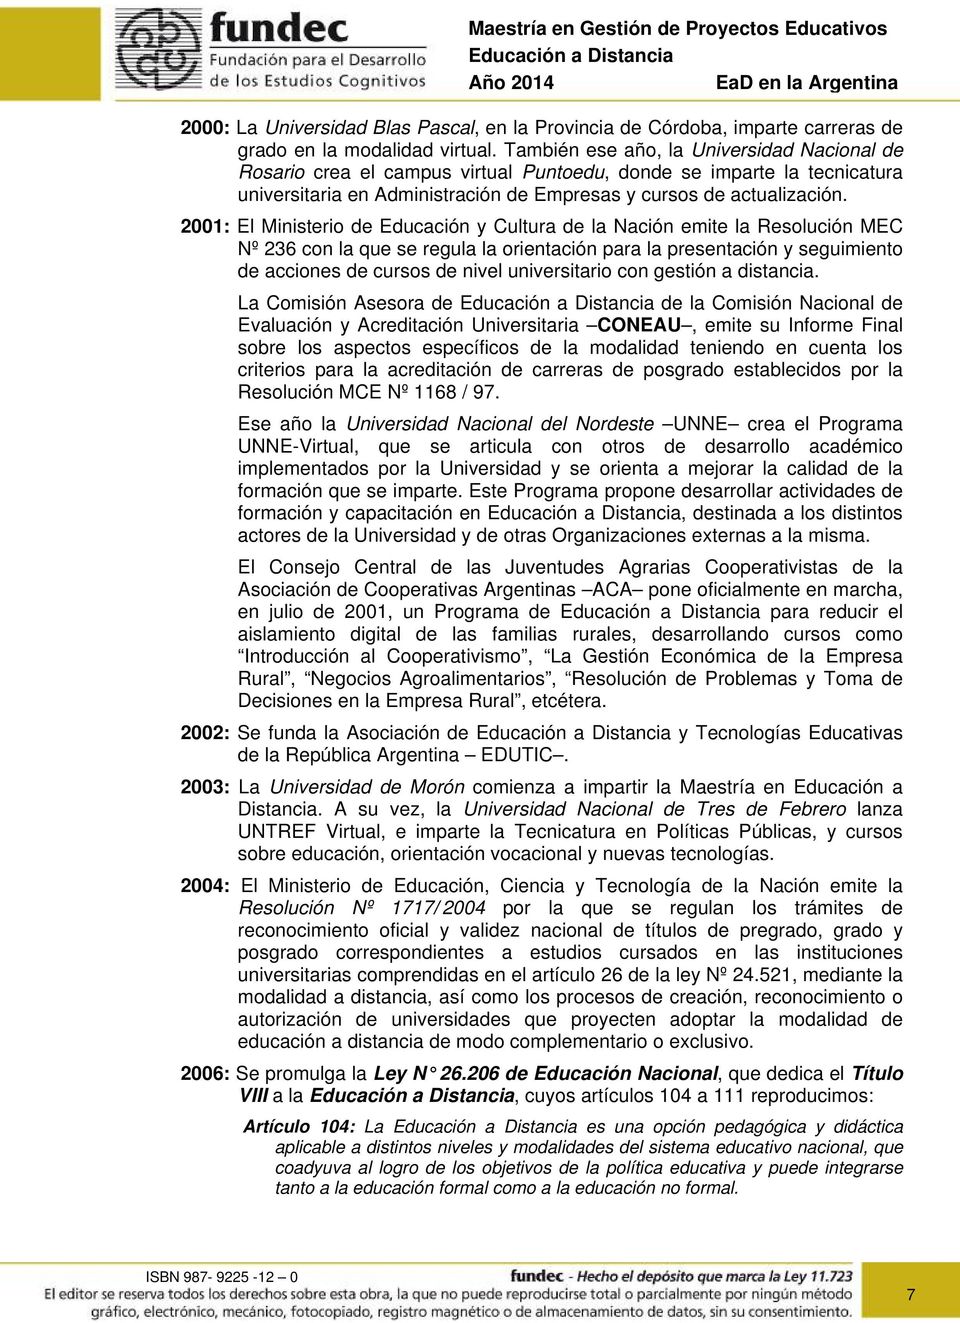 2001: El Ministerio de Educación y Cultura de la Nación emite la Resolución MEC Nº 236 con la que se regula la orientación para la presentación y seguimiento de acciones de cursos de nivel